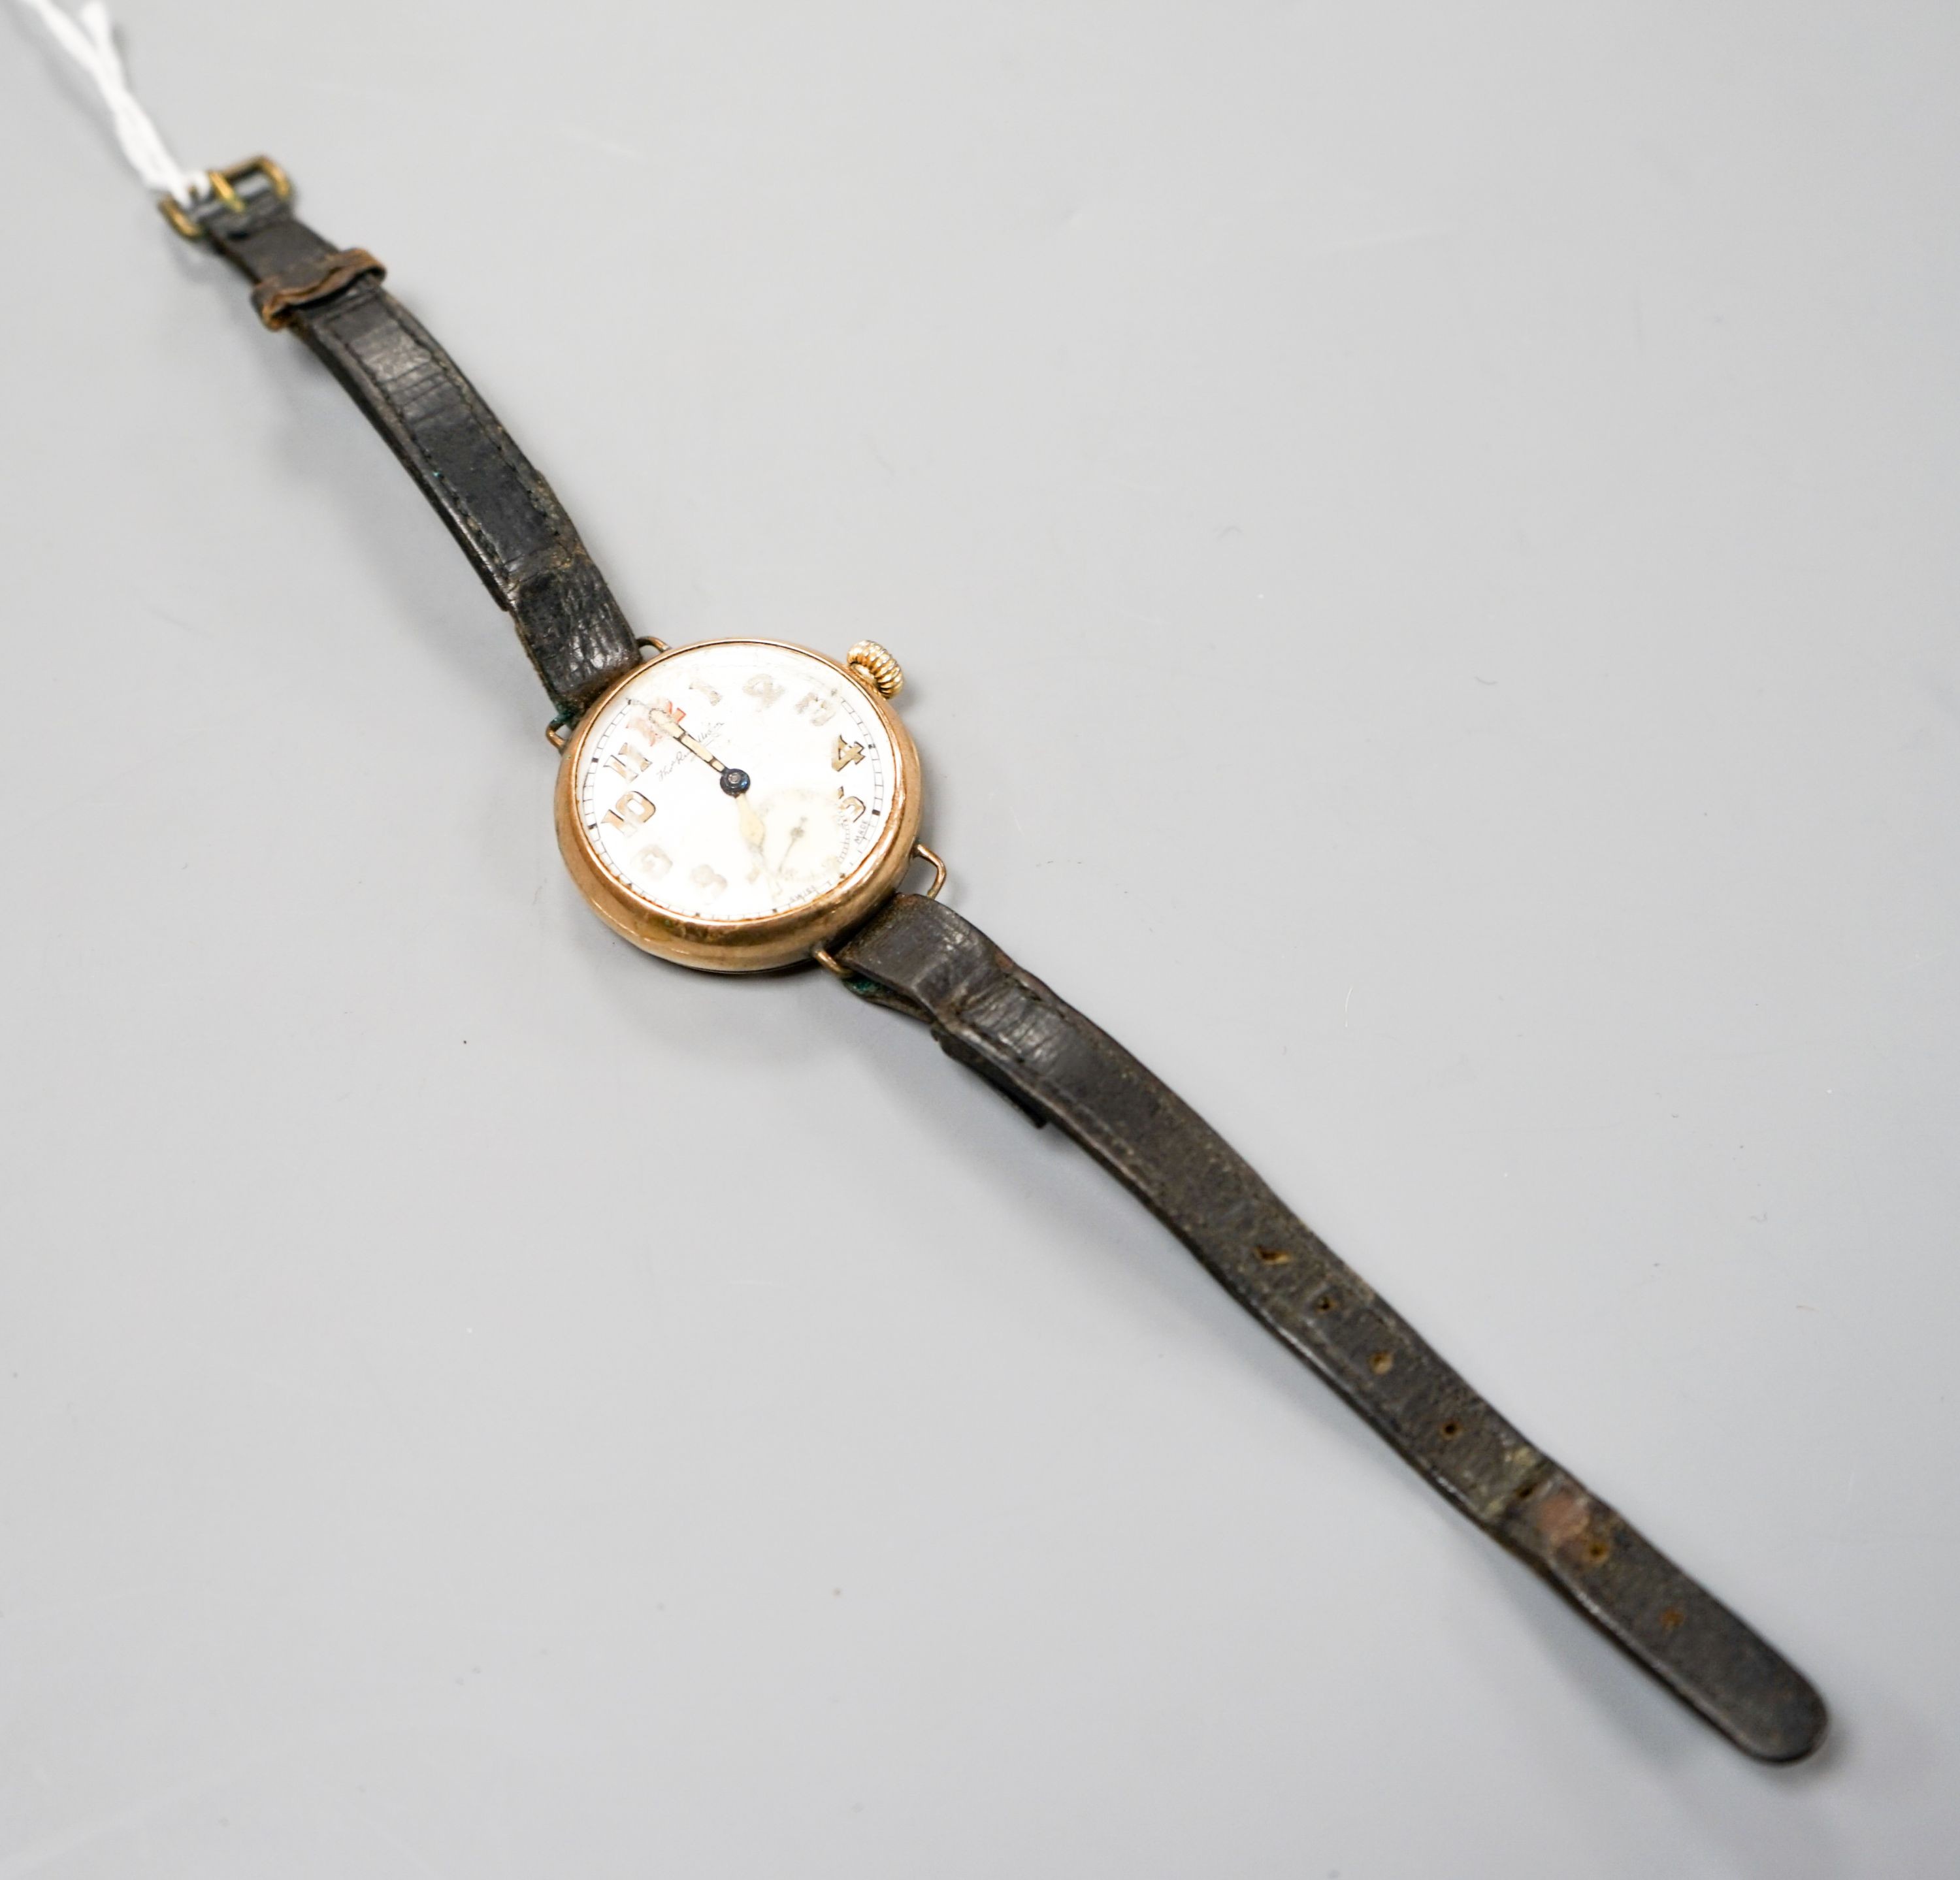 A gentleman's 9ct gold manual wind wrist watch, a.f. gross weight 29.7 grams.